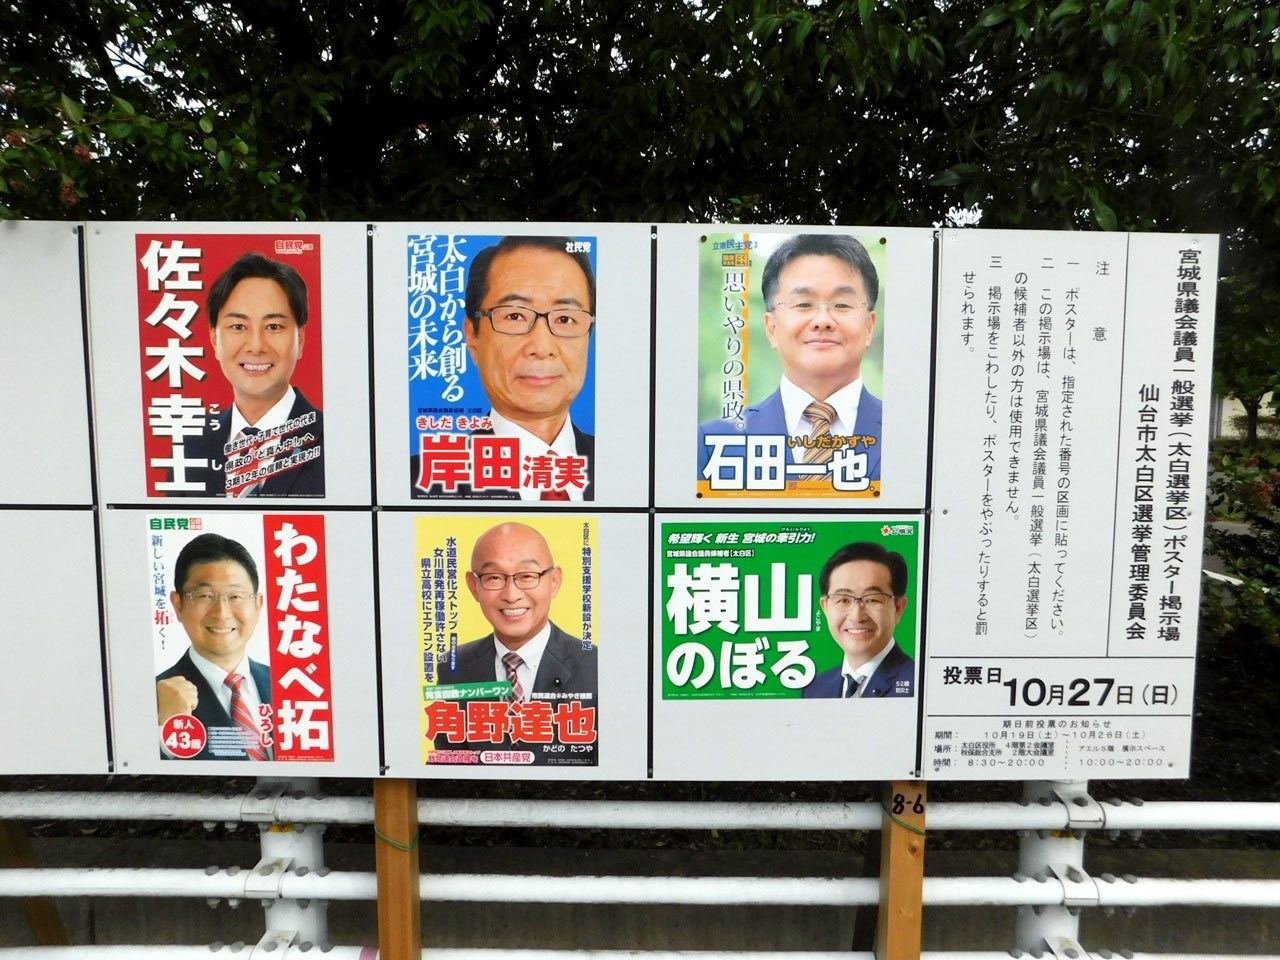 宮城 県議会 議員 選挙 結果